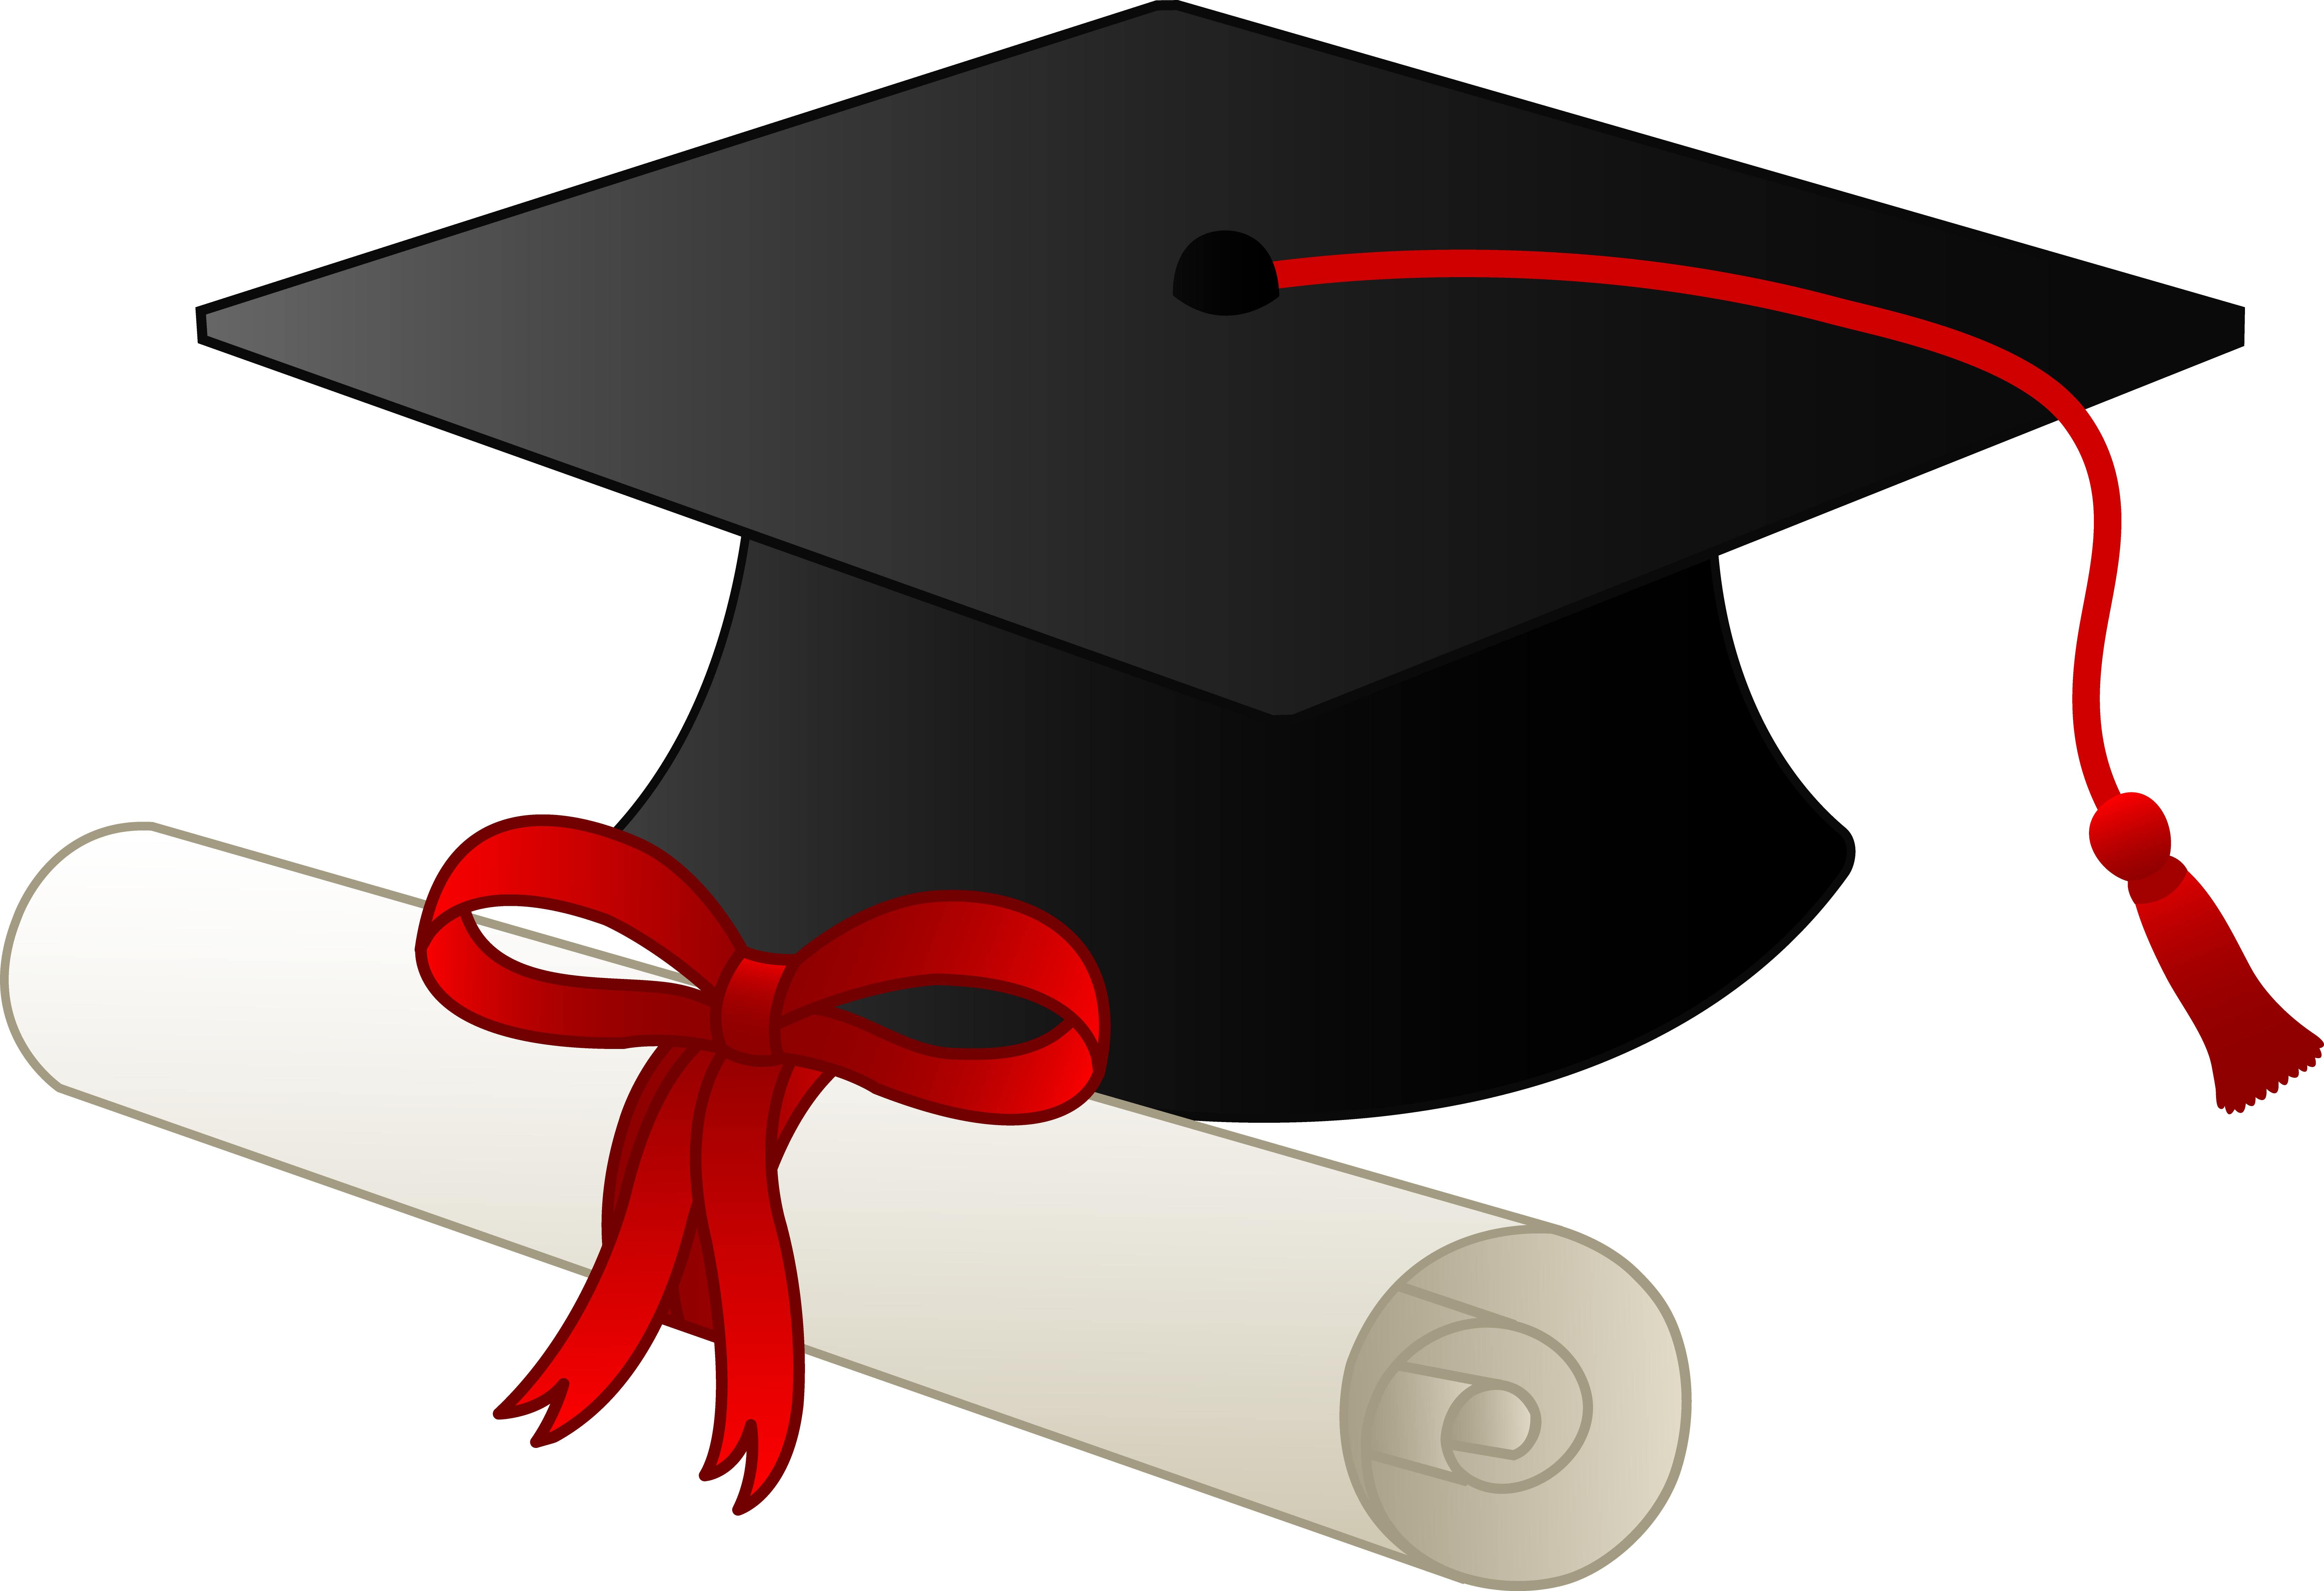 Graduation Cap Clipart | Graduation ...